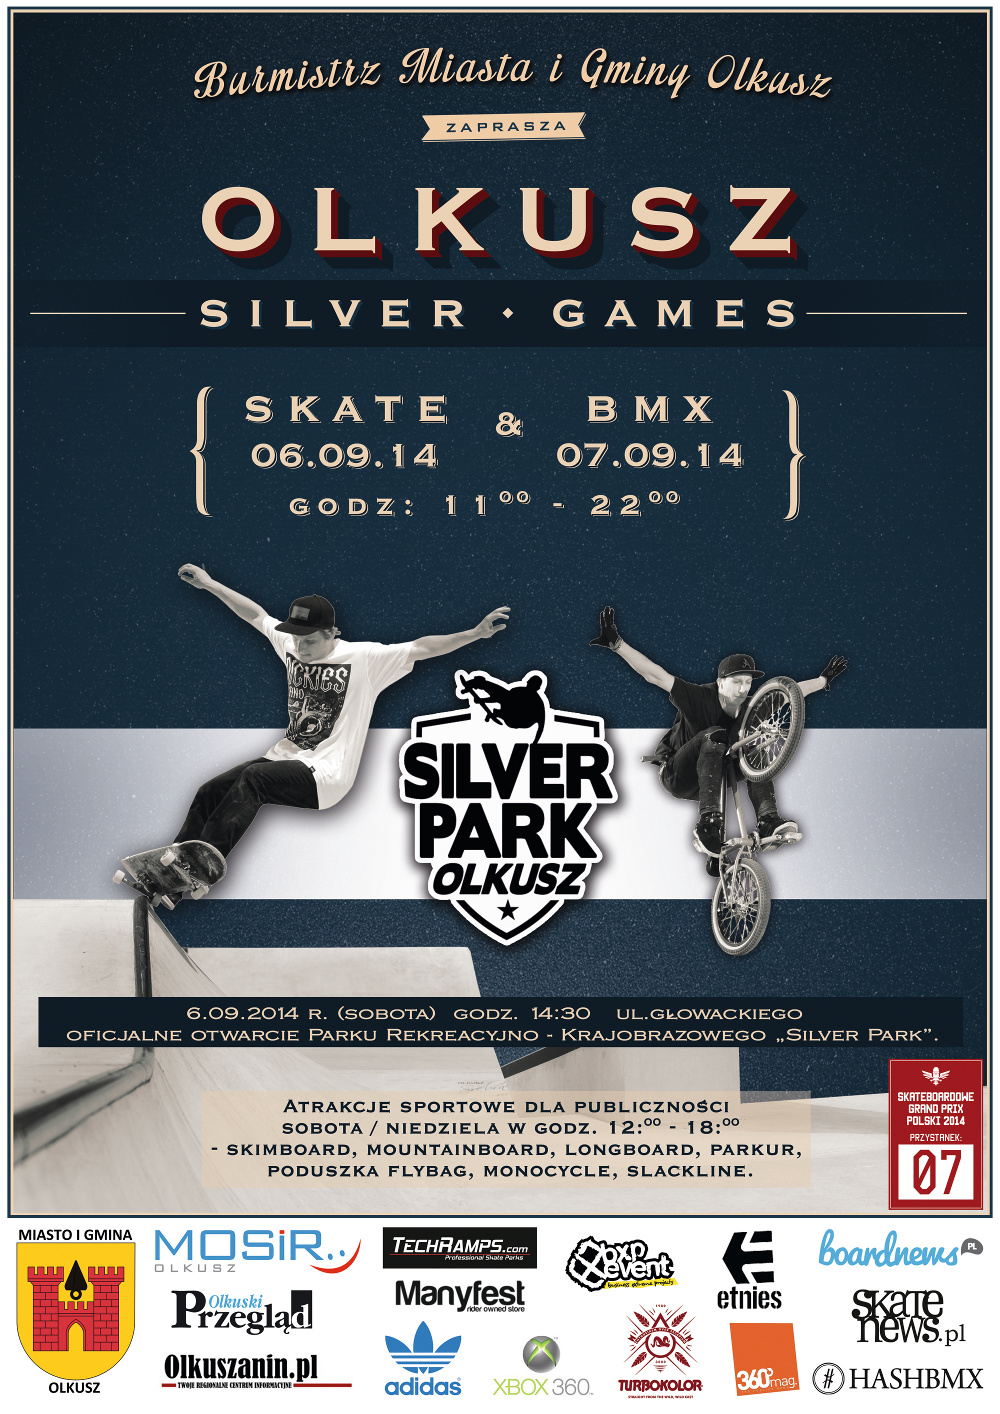 Plakat promujący Olkusz Silver Games w 2014 roku